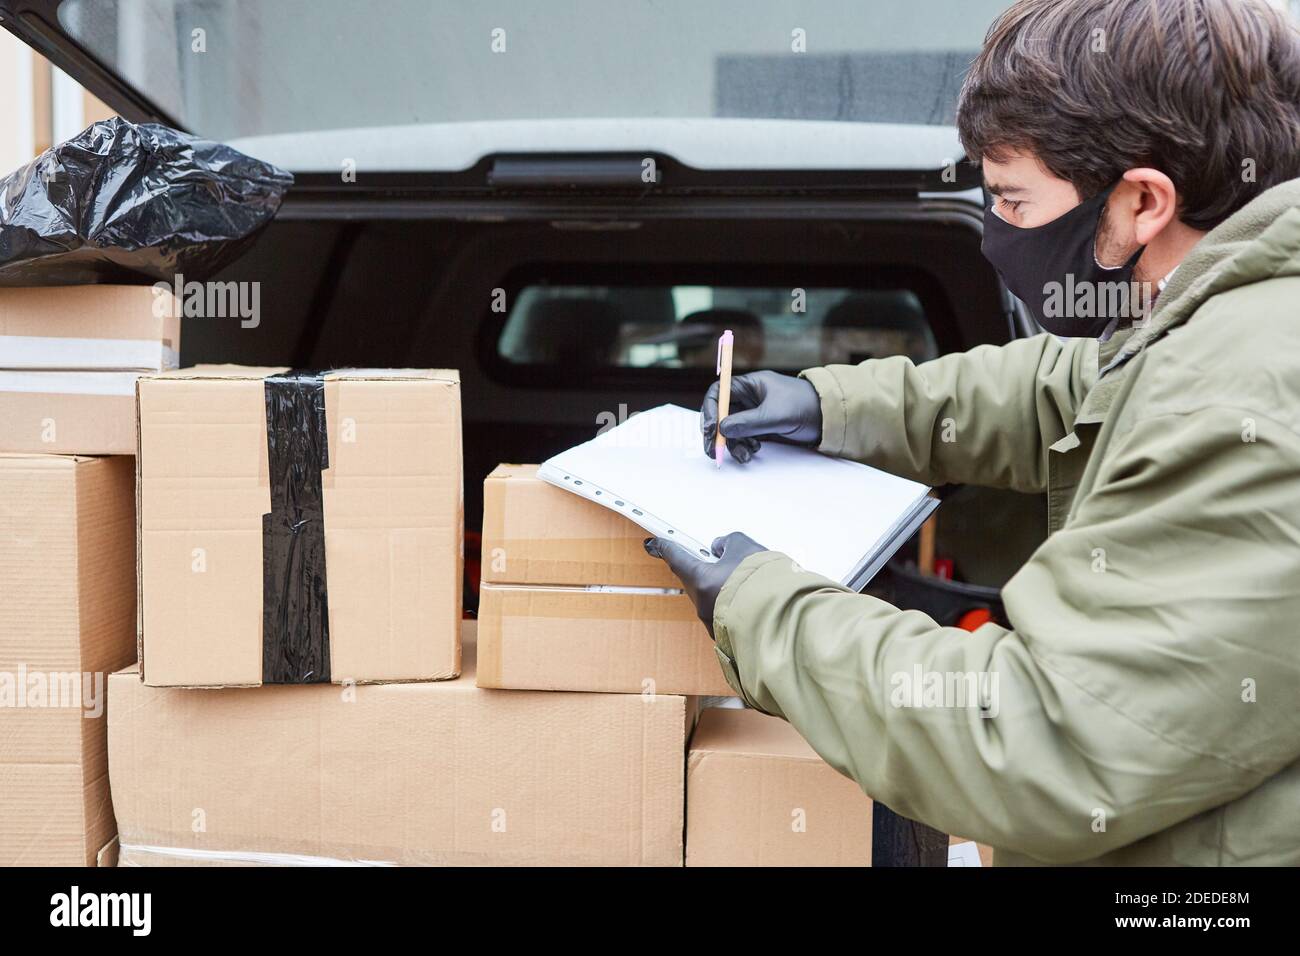 Paketzustellung Mann mit vielen Paketen im Kofferraum von Der Lieferwagen mit Gesichtsmaske wegen Covid-19 Stockfoto